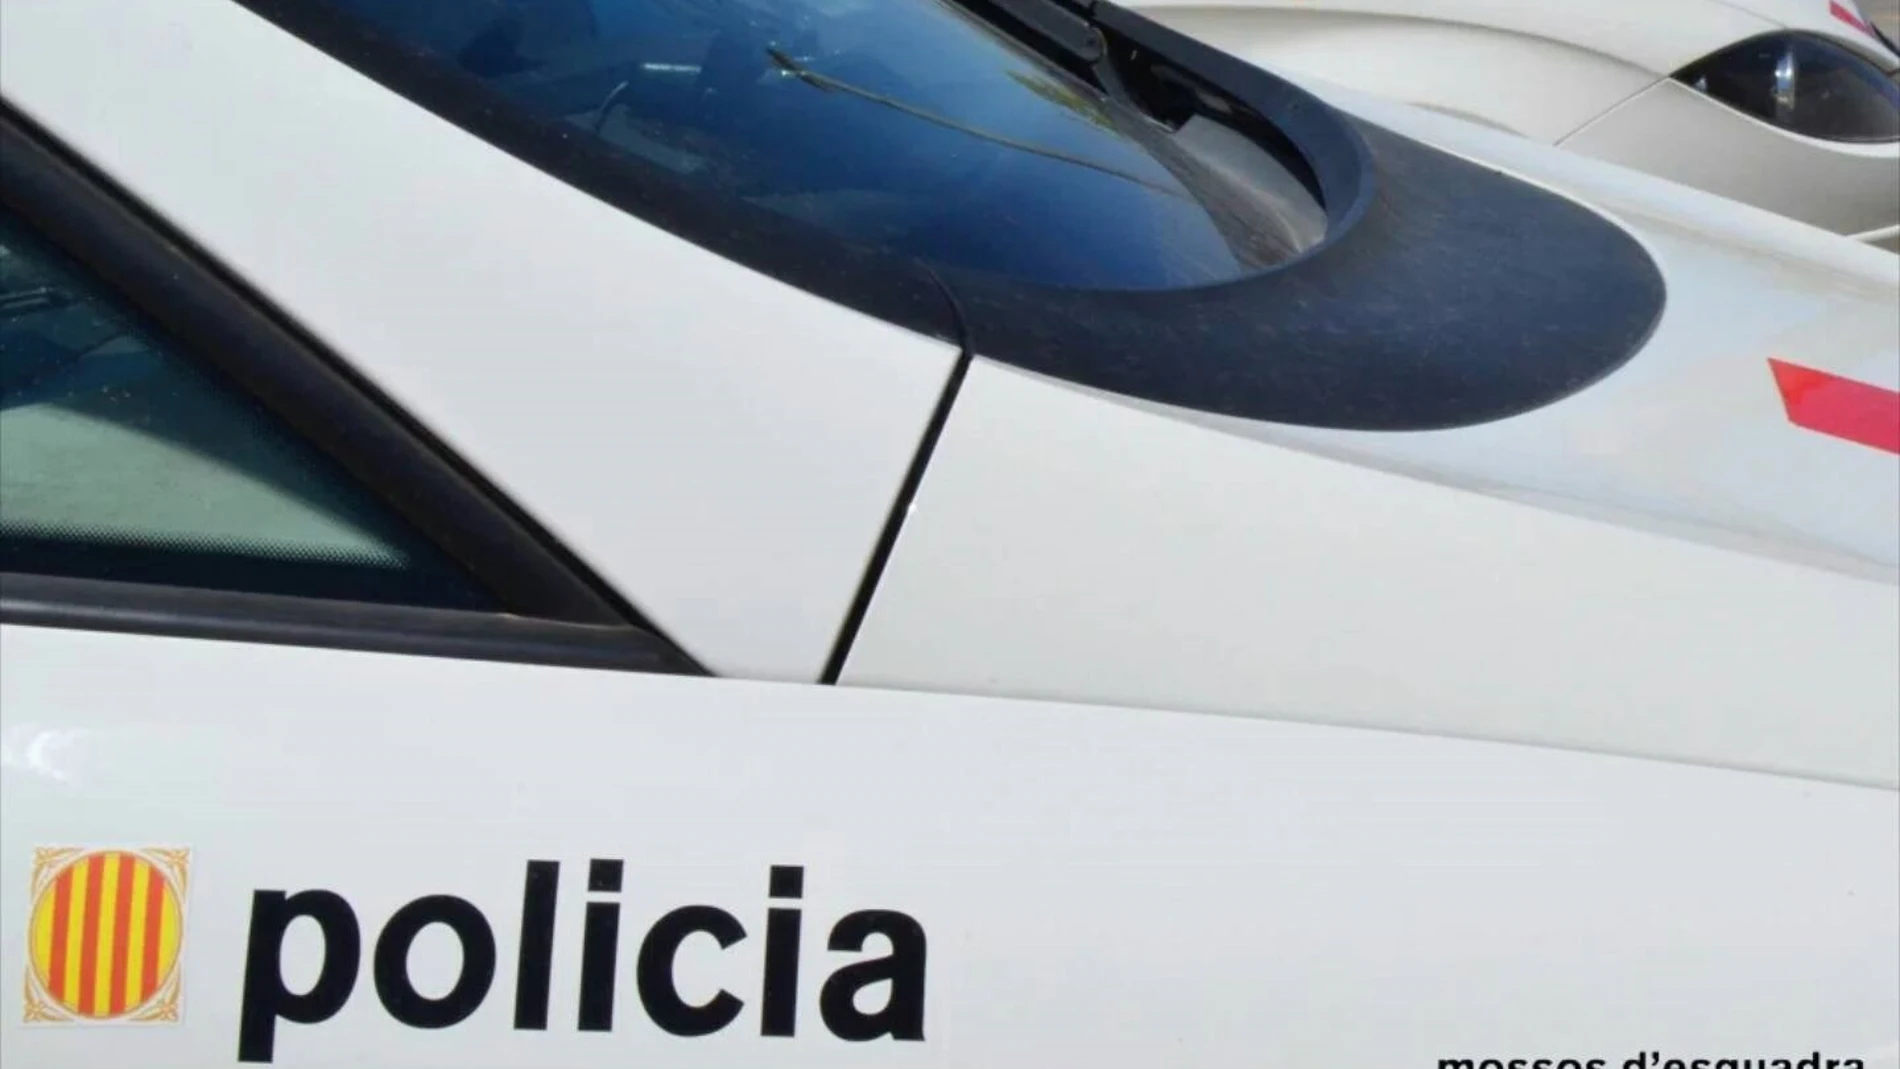 Sucesos.- A prisión un ladrón con 11 órdenes de búsqueda por nueve robos en la provincia de Girona